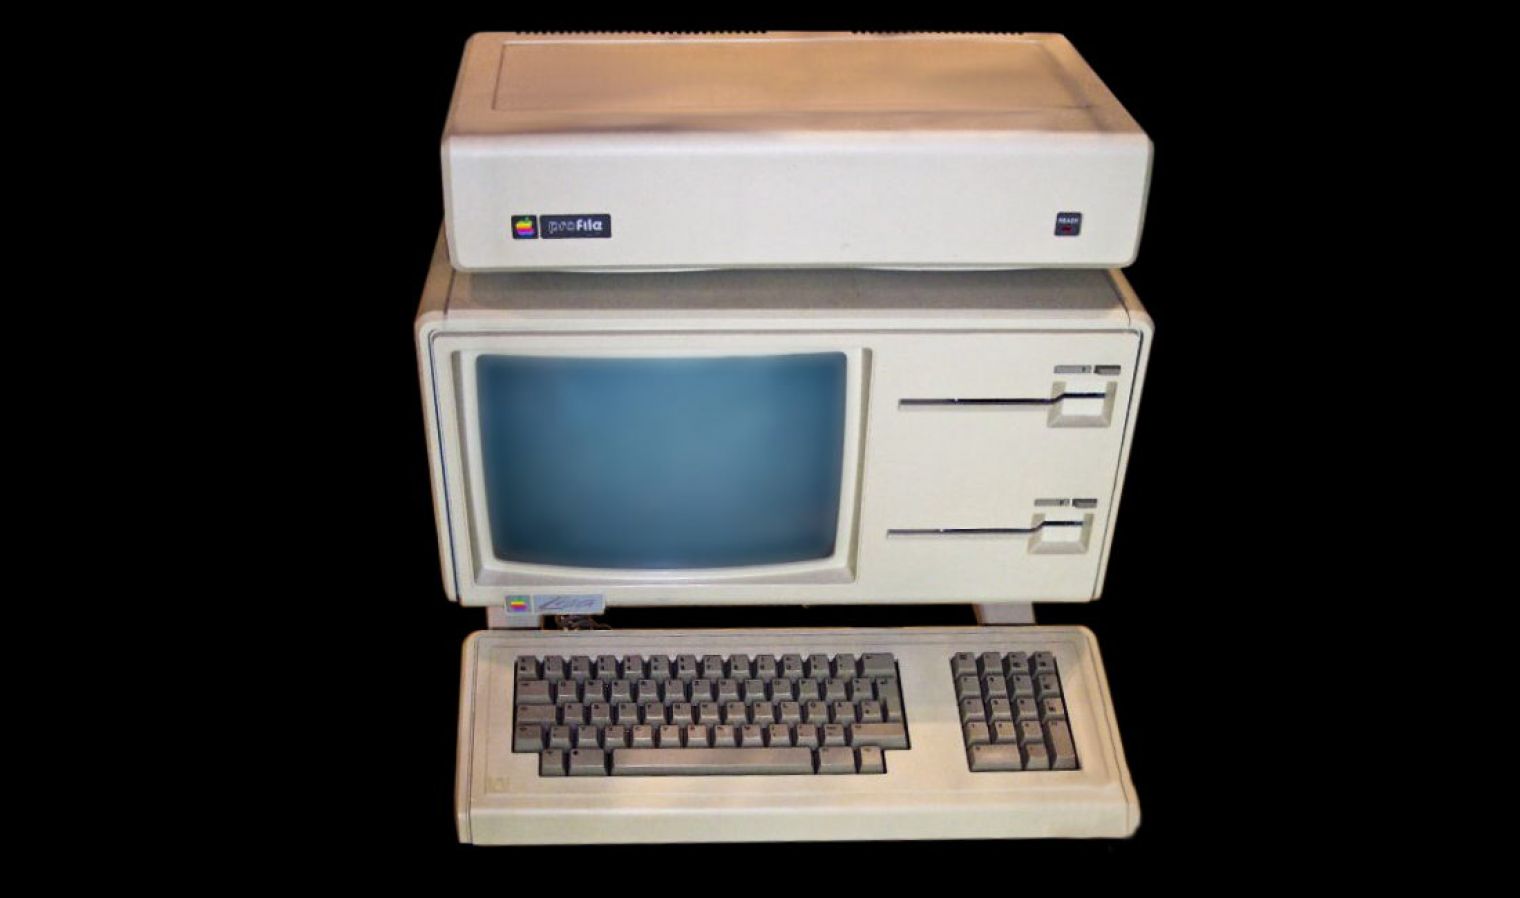 1983: Premiera Apple Lisa